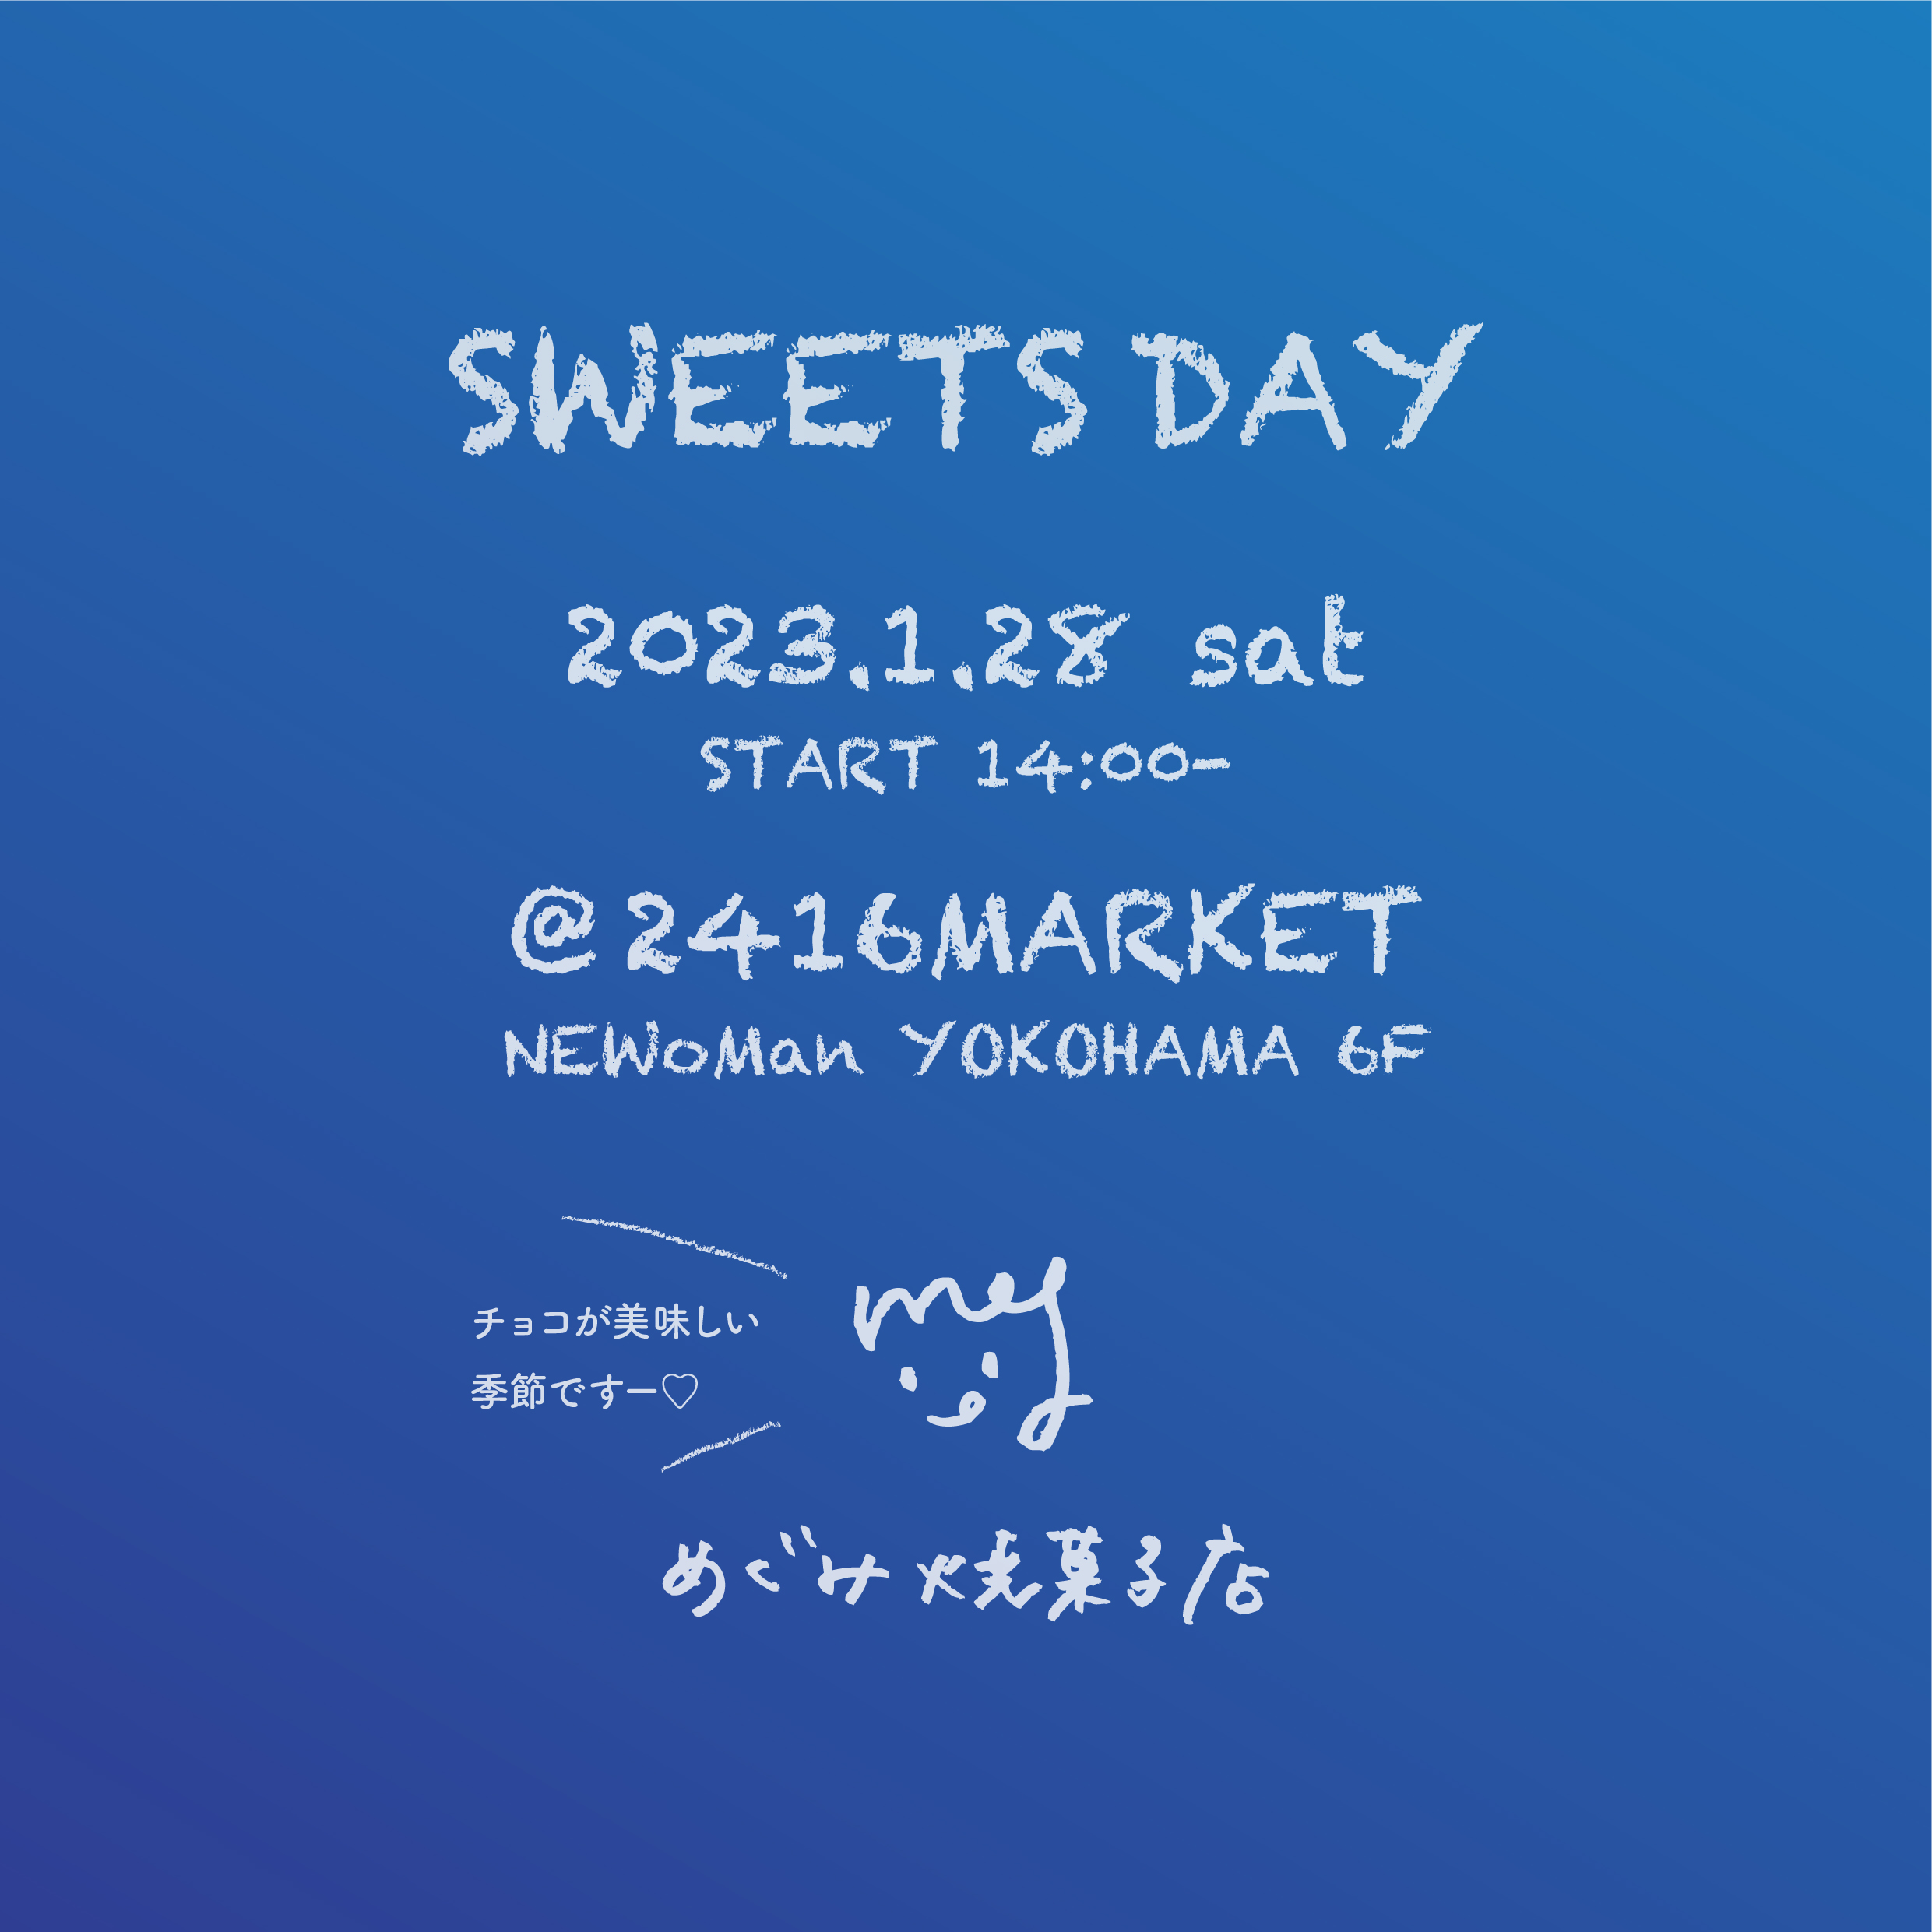 1/28開催 SWEETS DAY@2416MARKET のご案内 | めぐみ焼菓子店